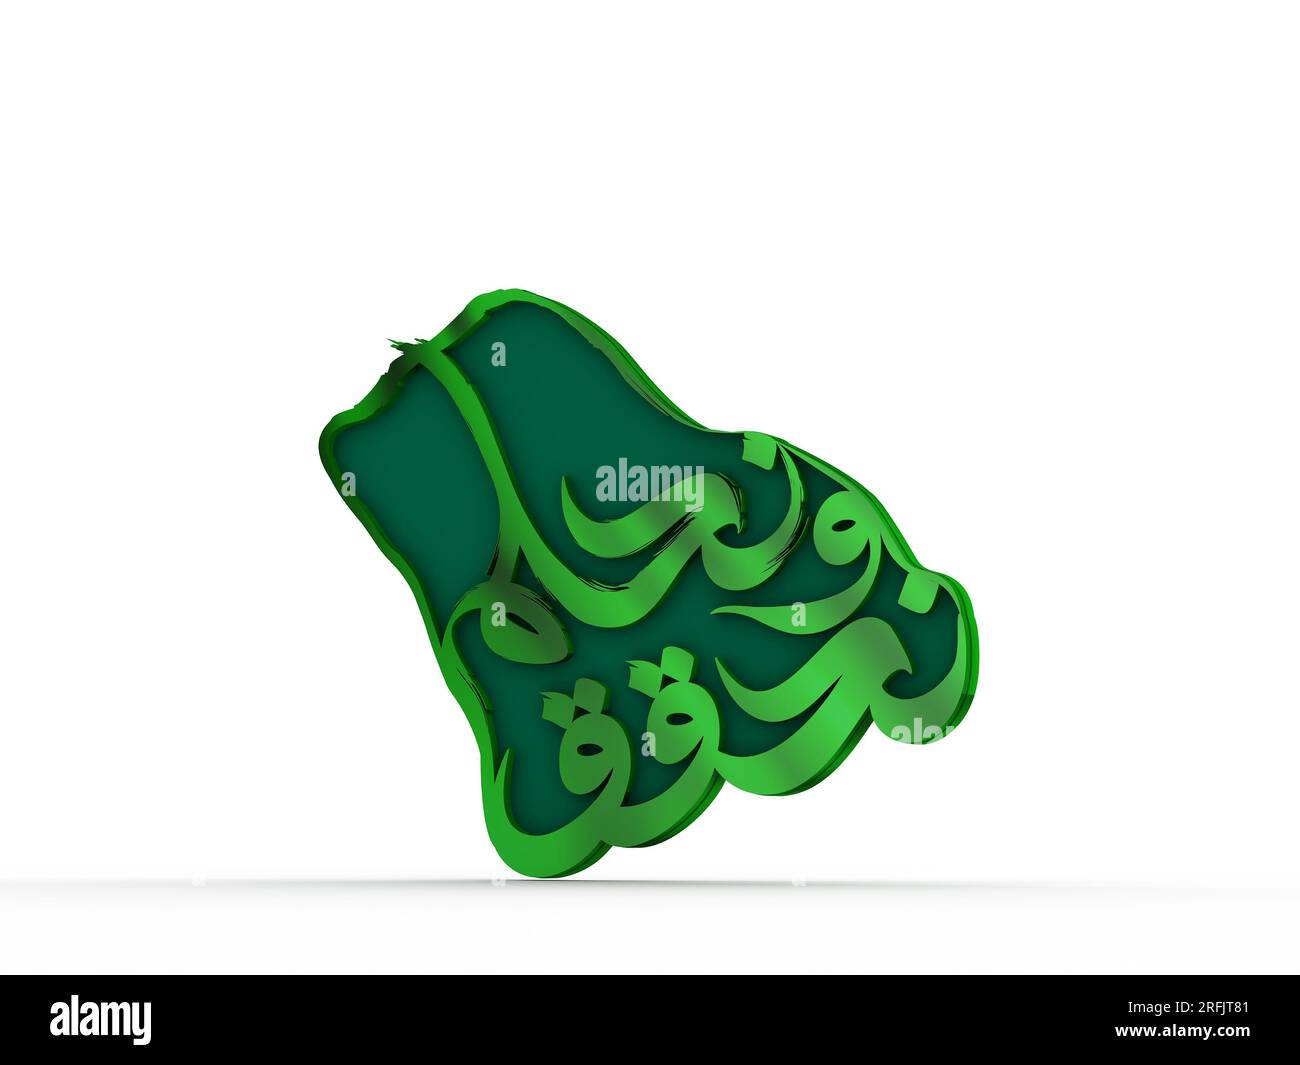 93. Saudi-Arabien Nationalfeiertag Identität mit arabischem Text „We Dream and Achievement“ (Wir träumen und erreichen) Stockfoto